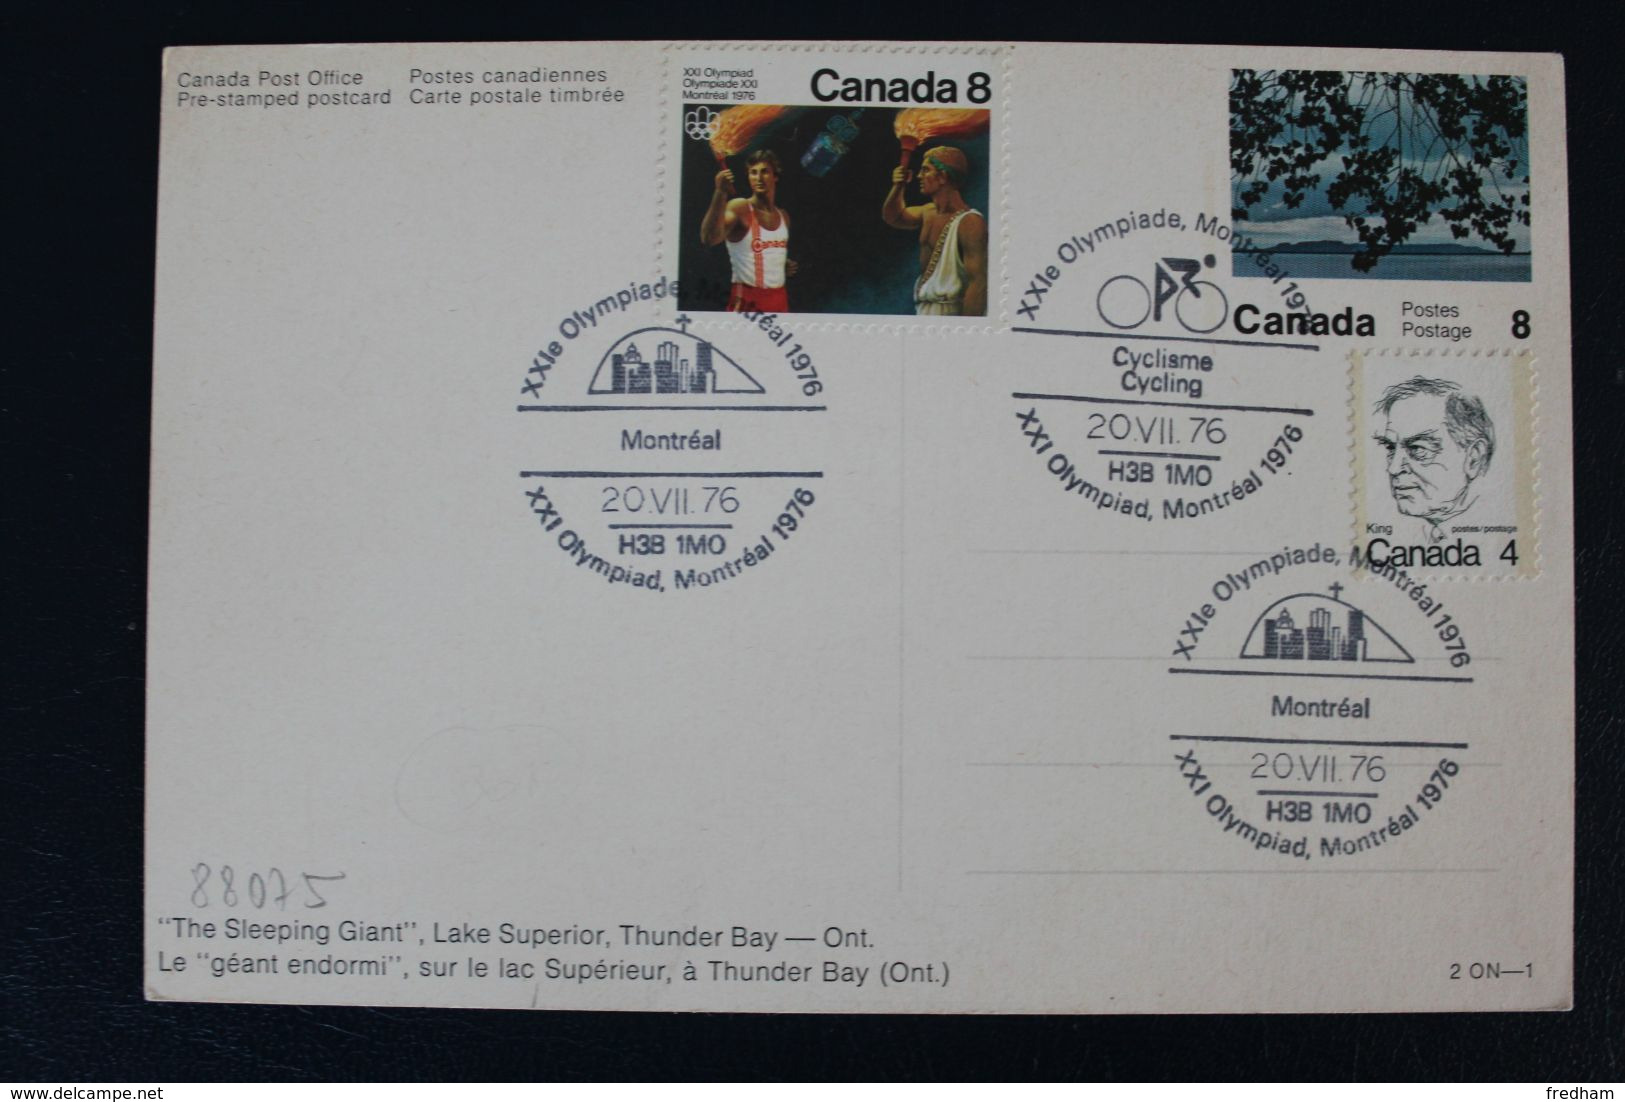 CANADA 1976 CARTE POSTALE ILLUSTREE XXIe OLYMPIADES MONTREAL DIFFERENTS CACHETS COMMEMORATIFS - Cartes Illustrées Officielles